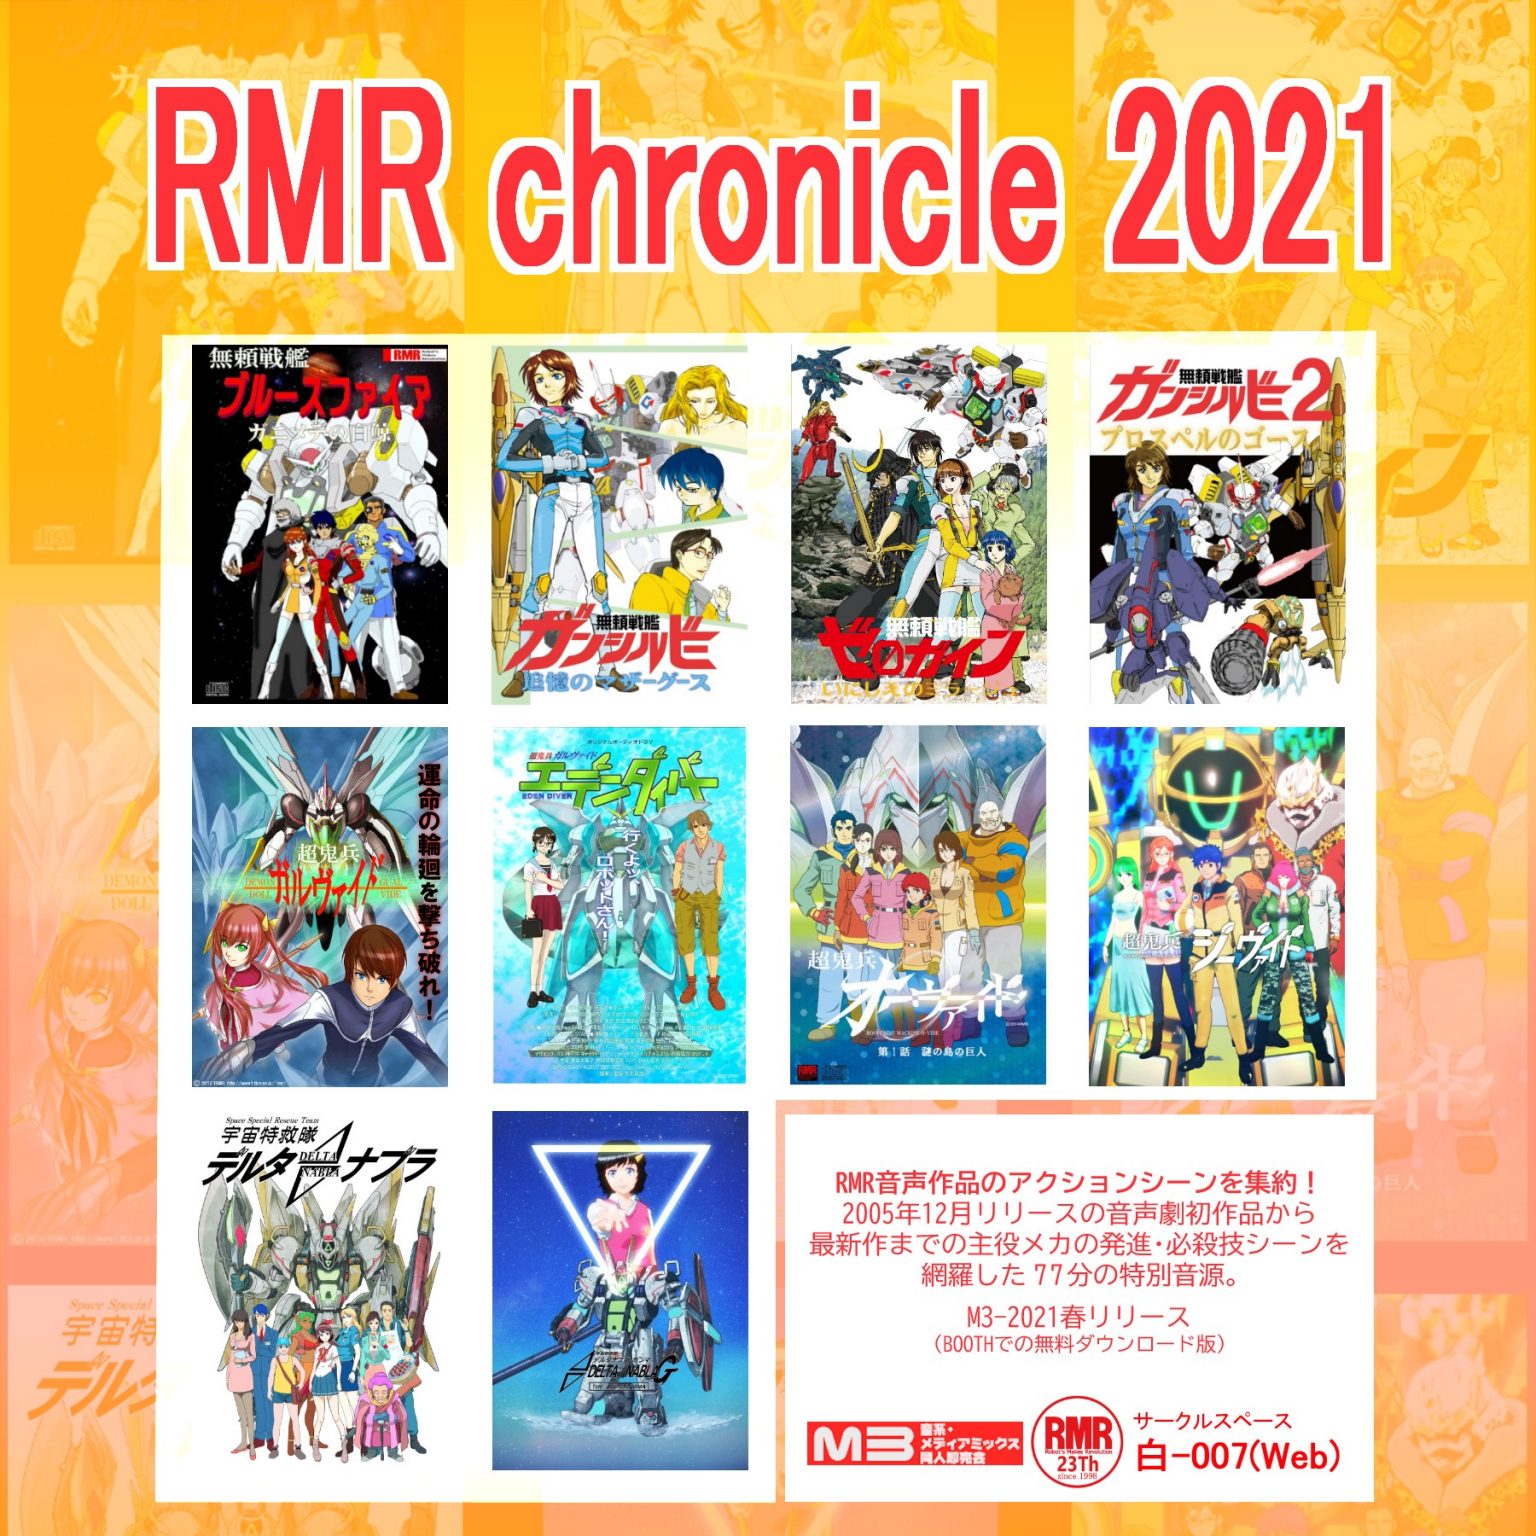 RMR chronicle 2021